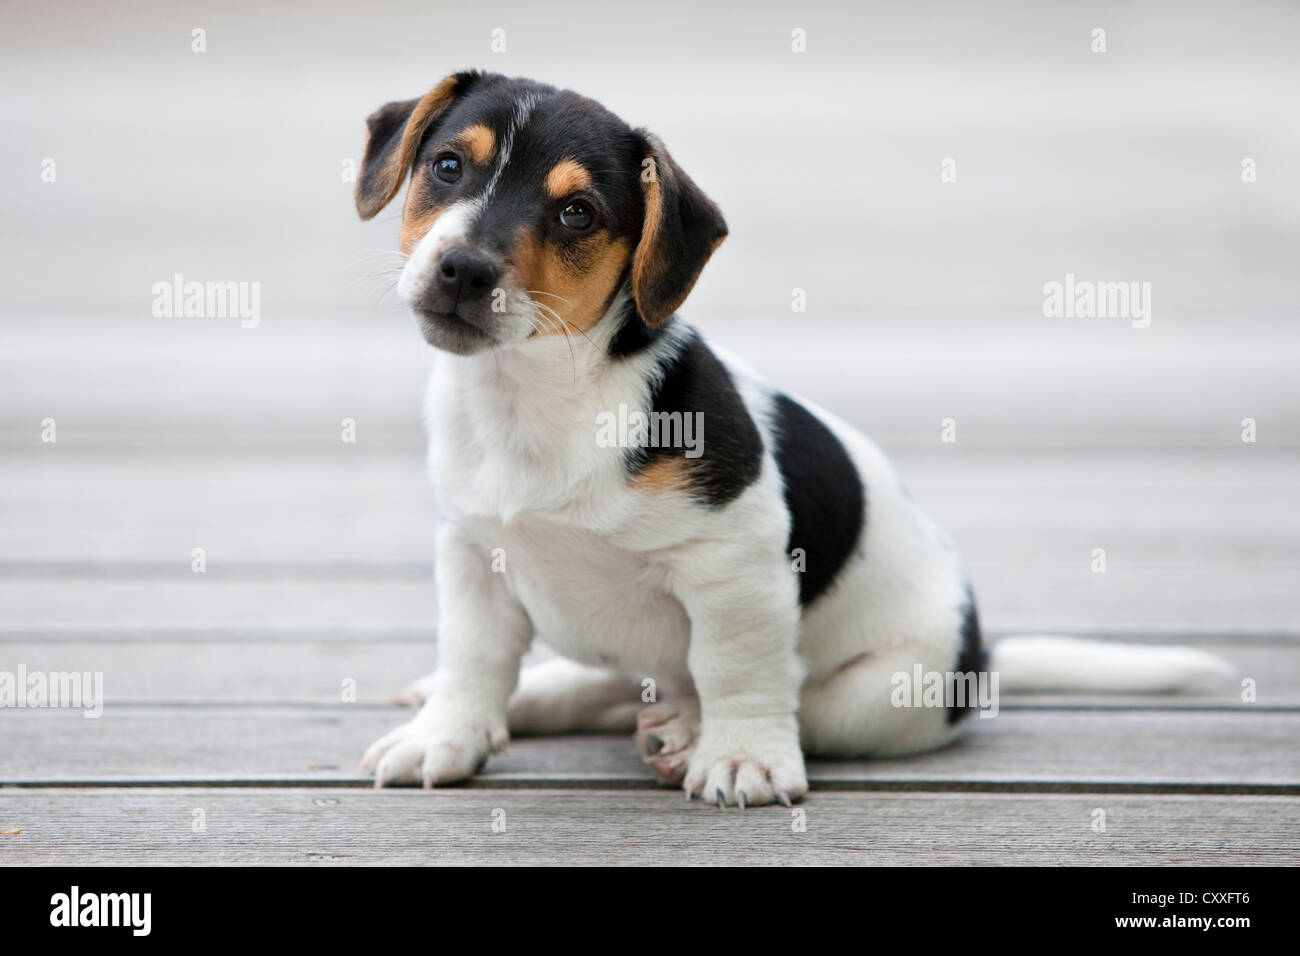 Jack Russell Terrier, chiot assis sur un plancher en bois, nord de l'Europe, Tyrol, Autriche Banque D'Images